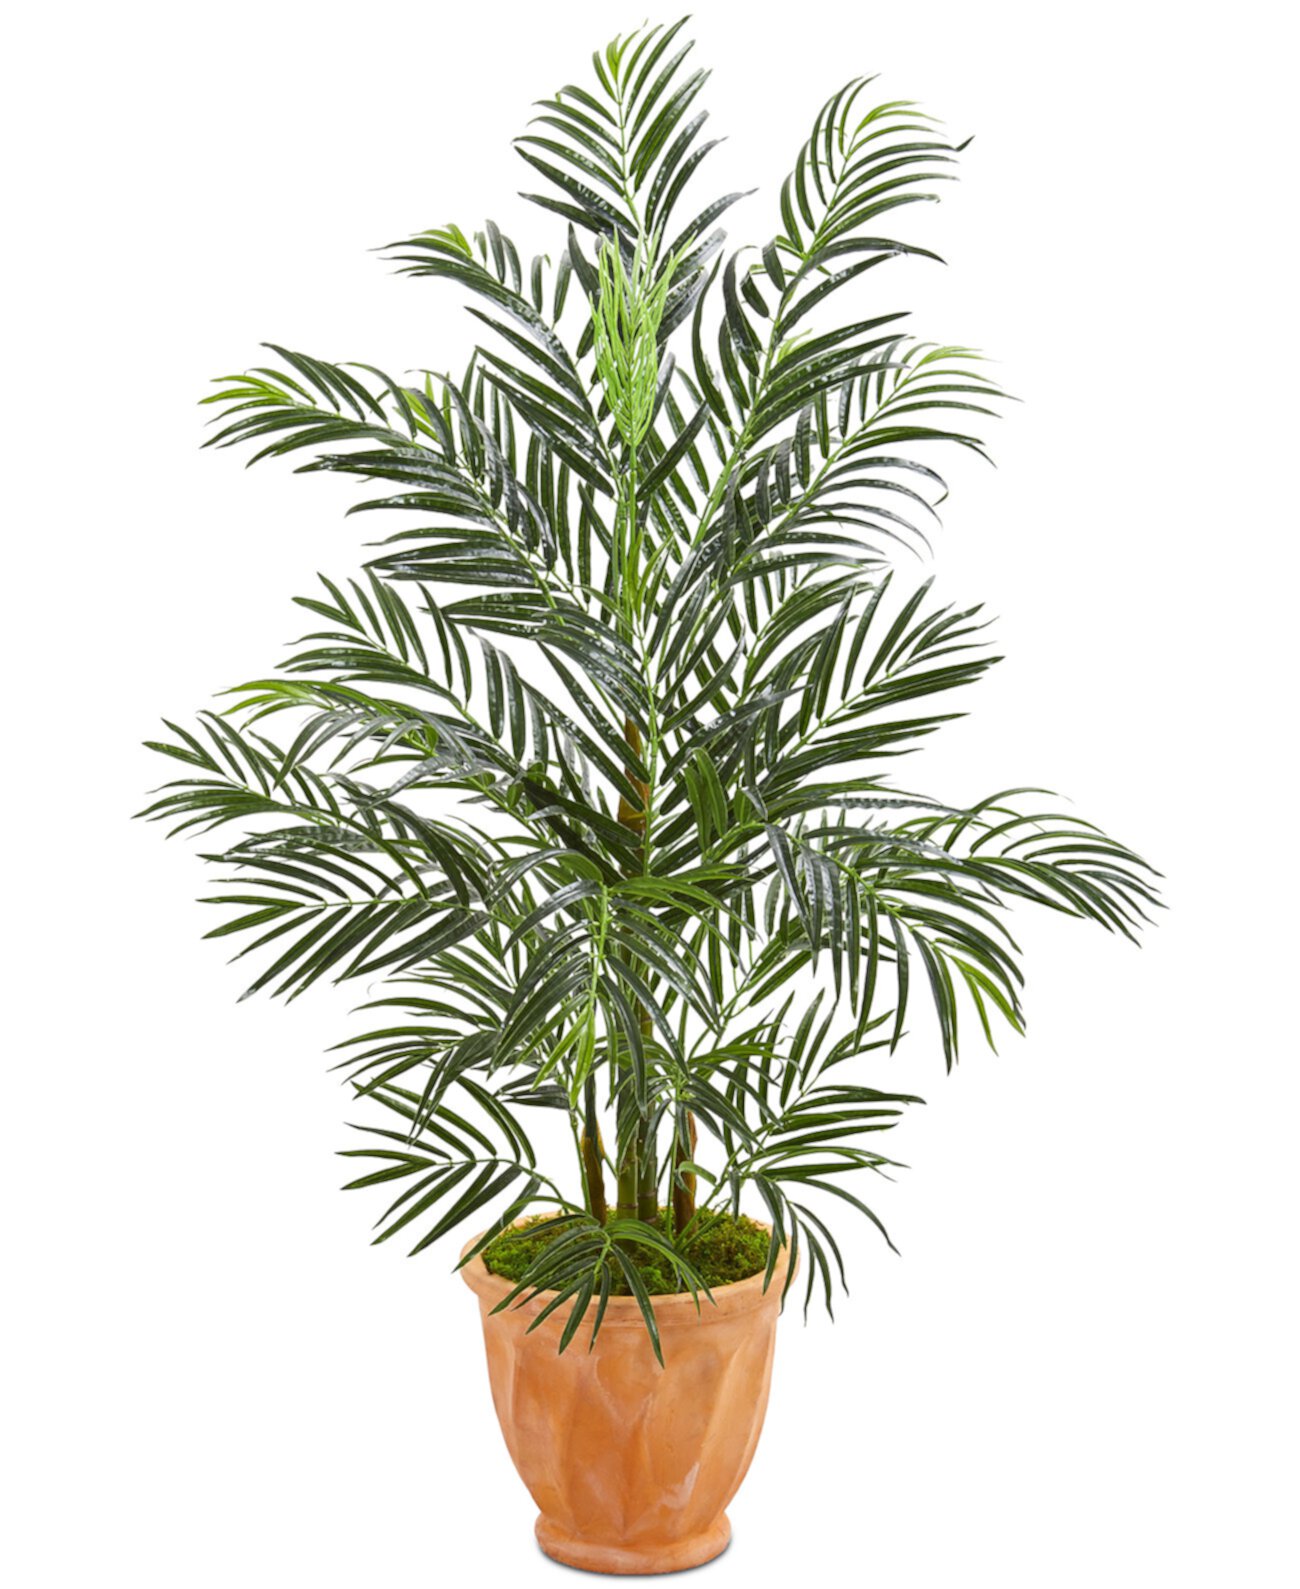 4 'Устойчивое к ультрафиолетовому излучению искусственное дерево Areca Palm в терракотовом кашпо NEARLY NATURAL